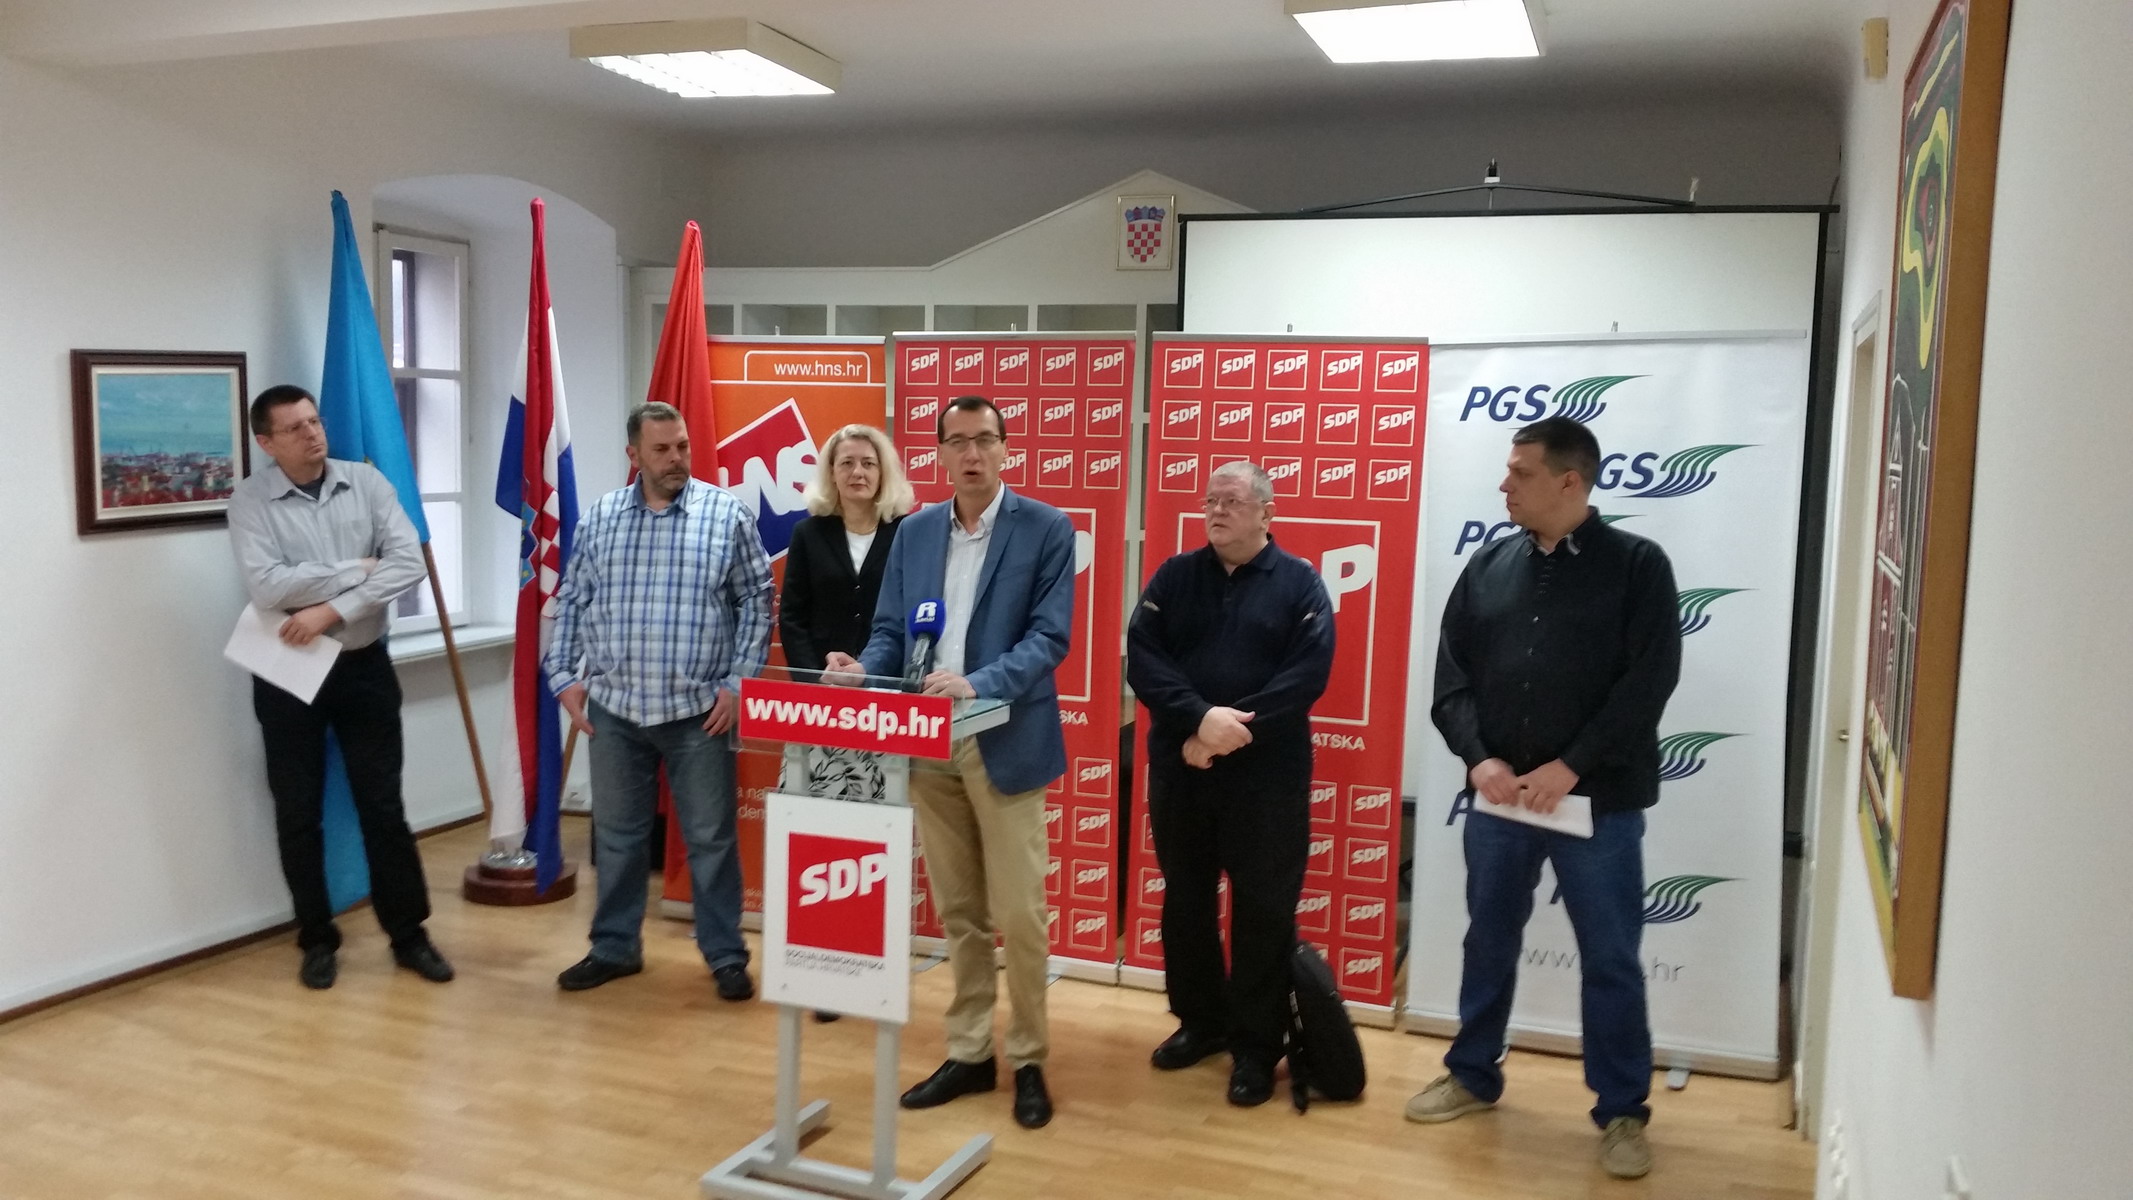 SDP-ova koalicija predstavila je svoje kandidate u dijelu mjesnih odbora